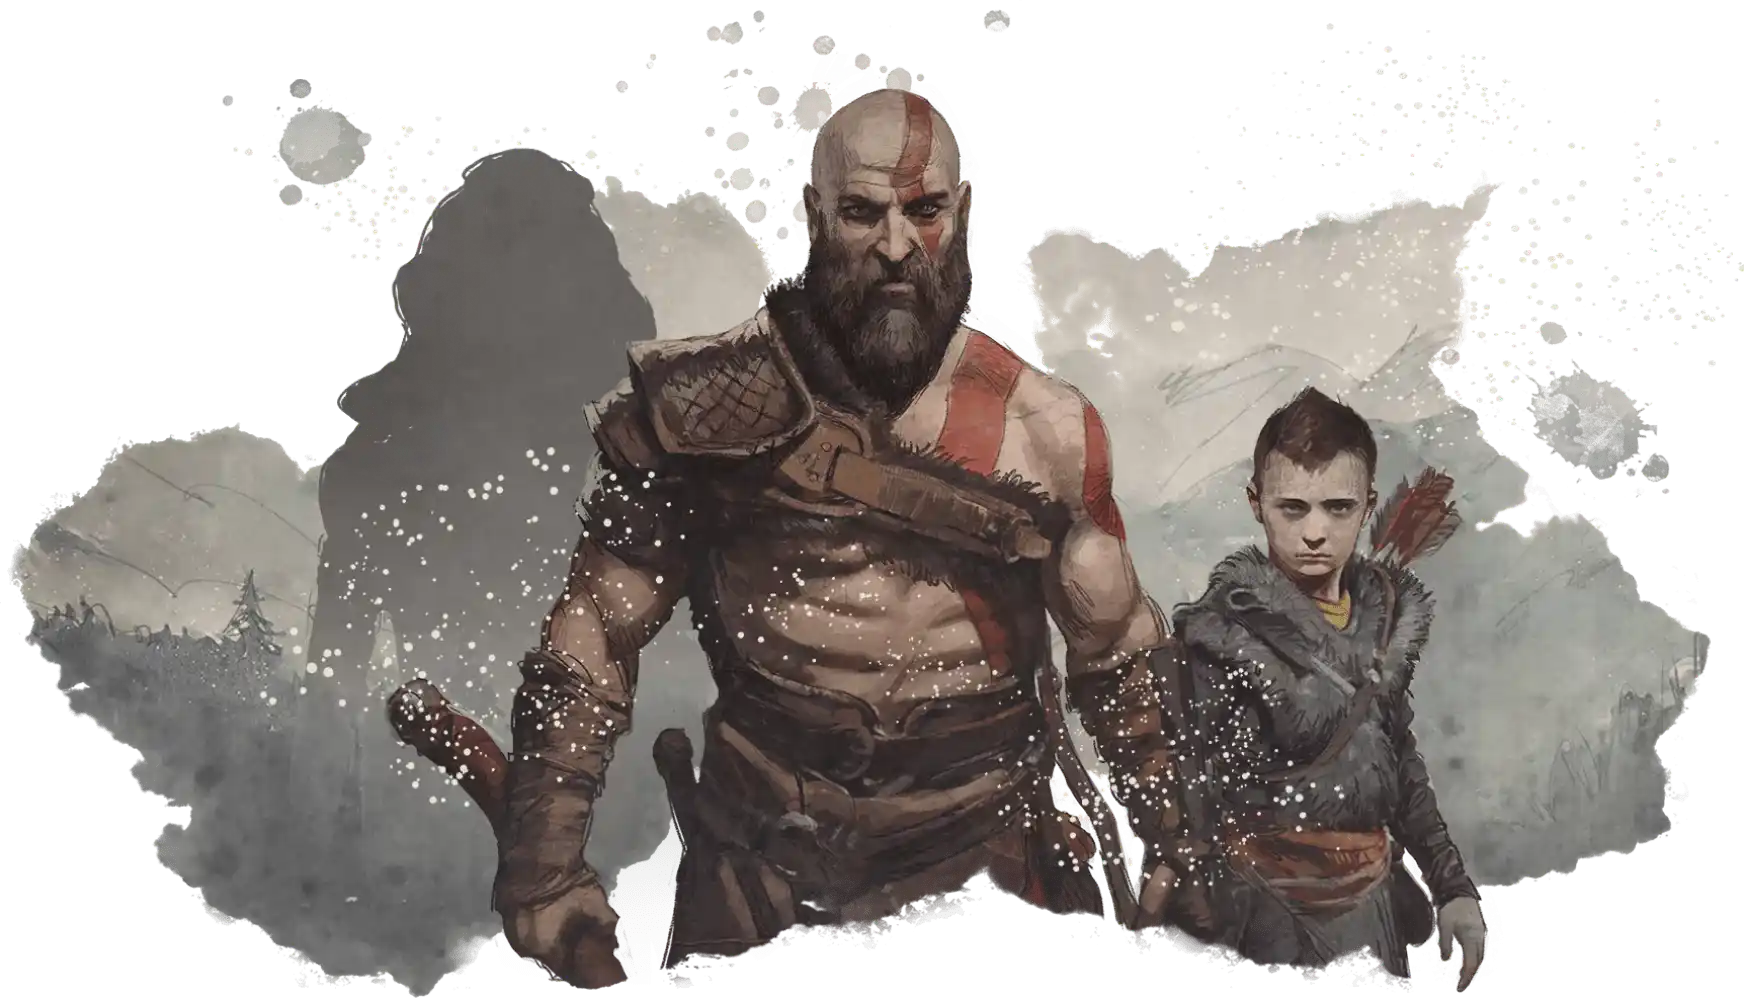 Kratos y Atreus mirando frente al espectador en posición de batalla